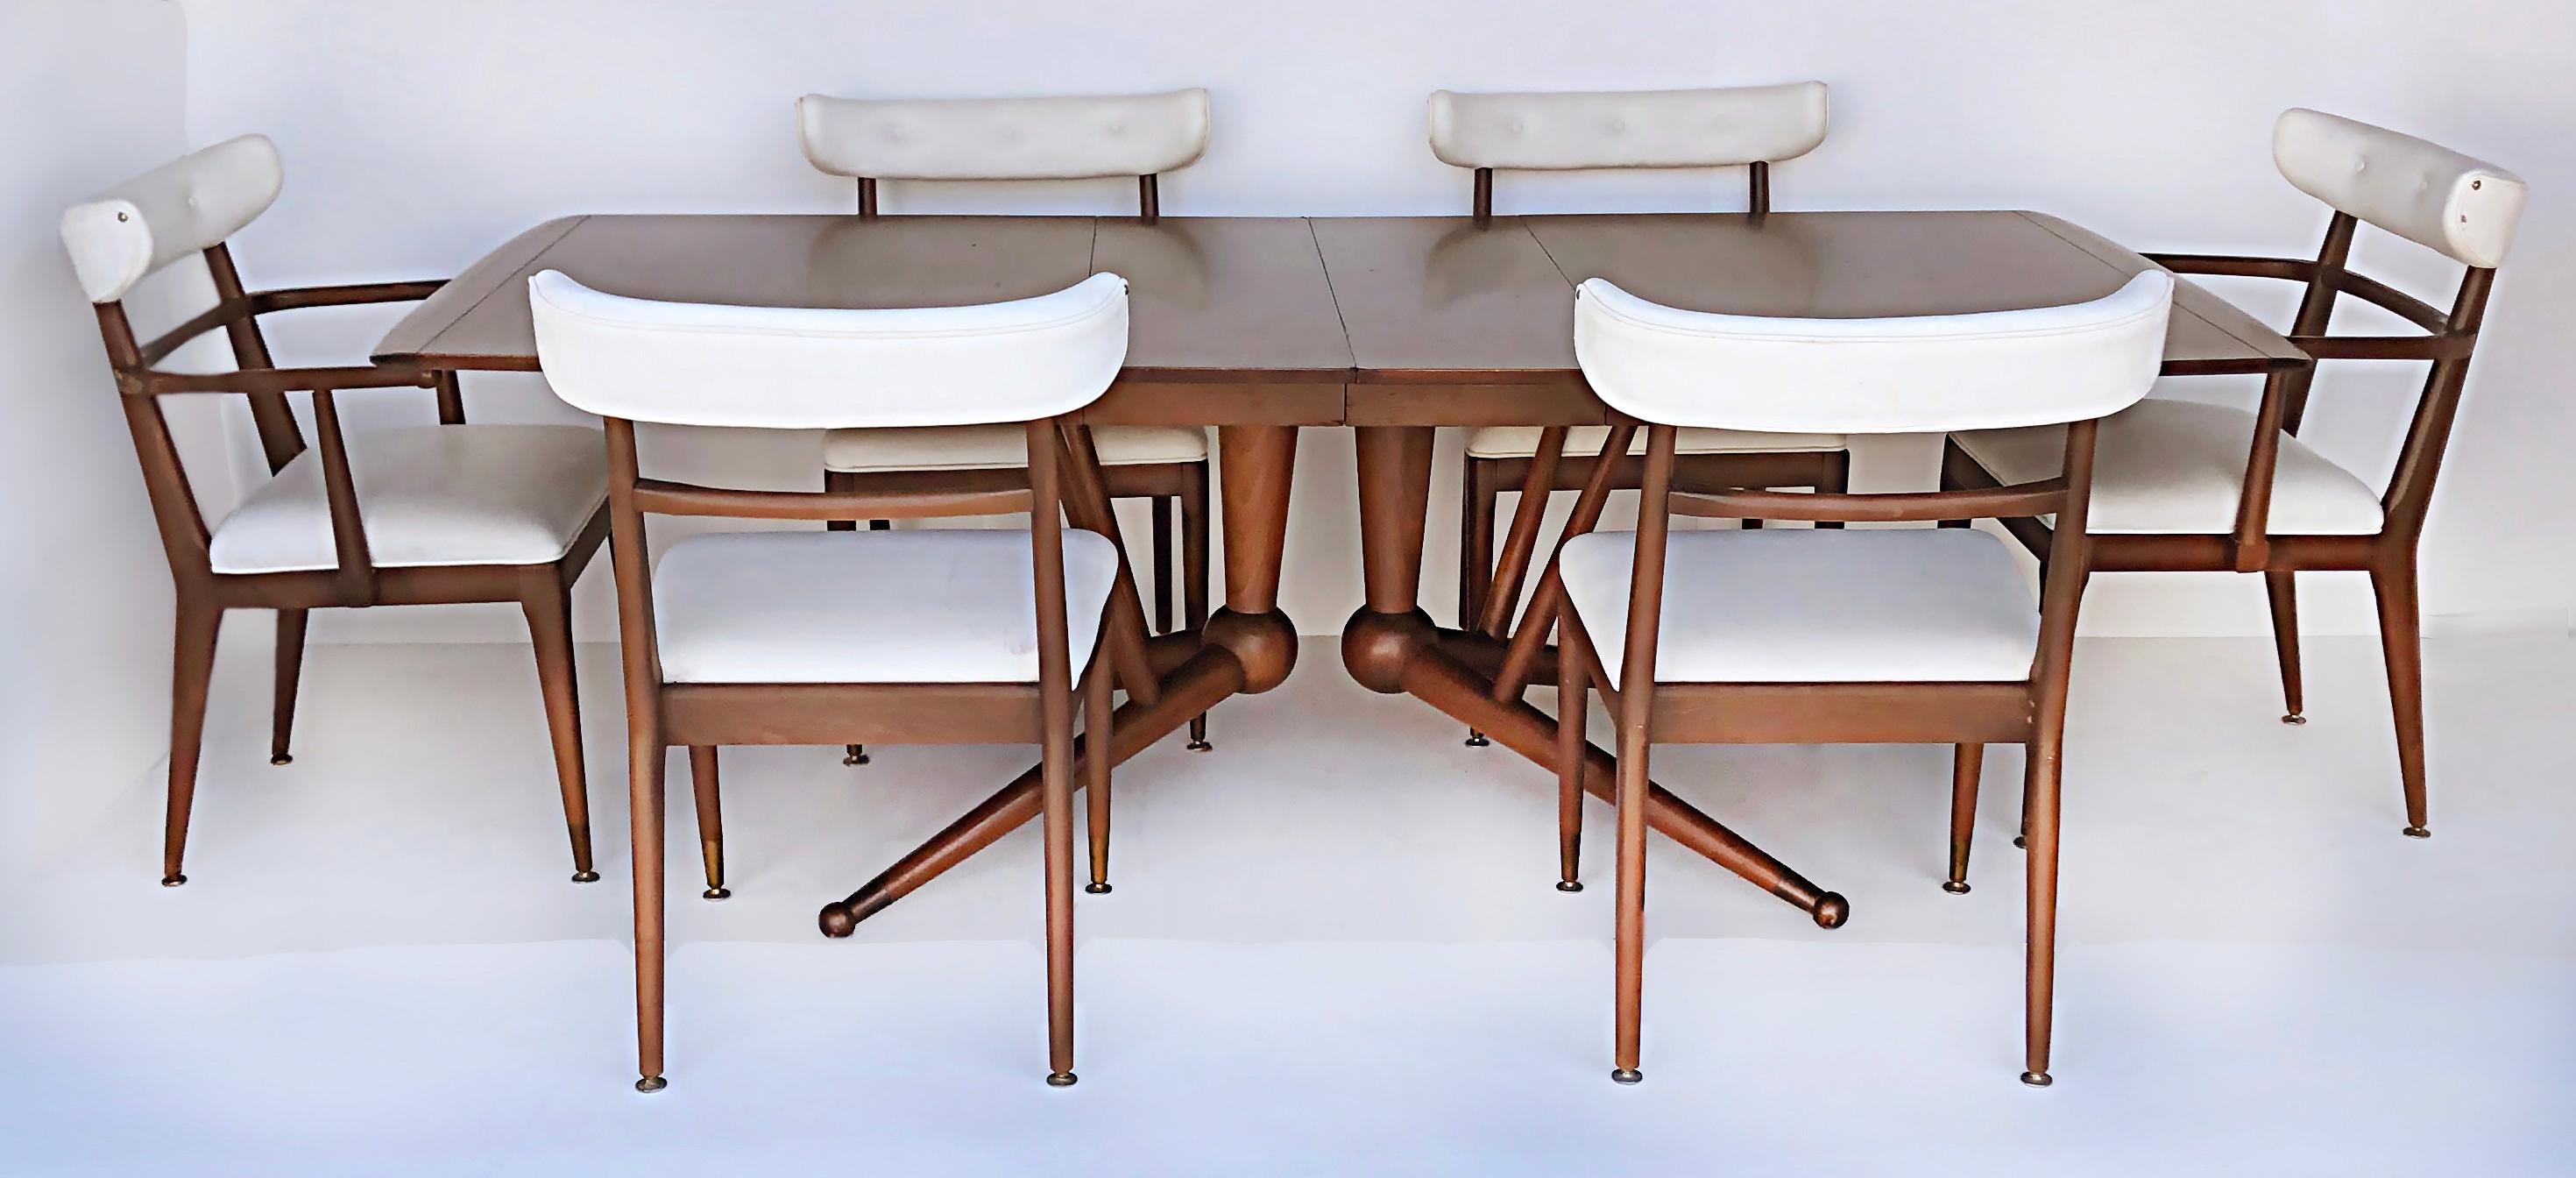 Amerikanische Mid-Century Modernist Esszimmerstühle, Satz von 6.

Zum Verkauf angeboten wird ein Satz von sechs amerikanischen Esszimmerstühlen im Modernismus der Jahrhundertmitte, darunter zwei Sessel und vier Beistellstühle. Die Stühle sind mit